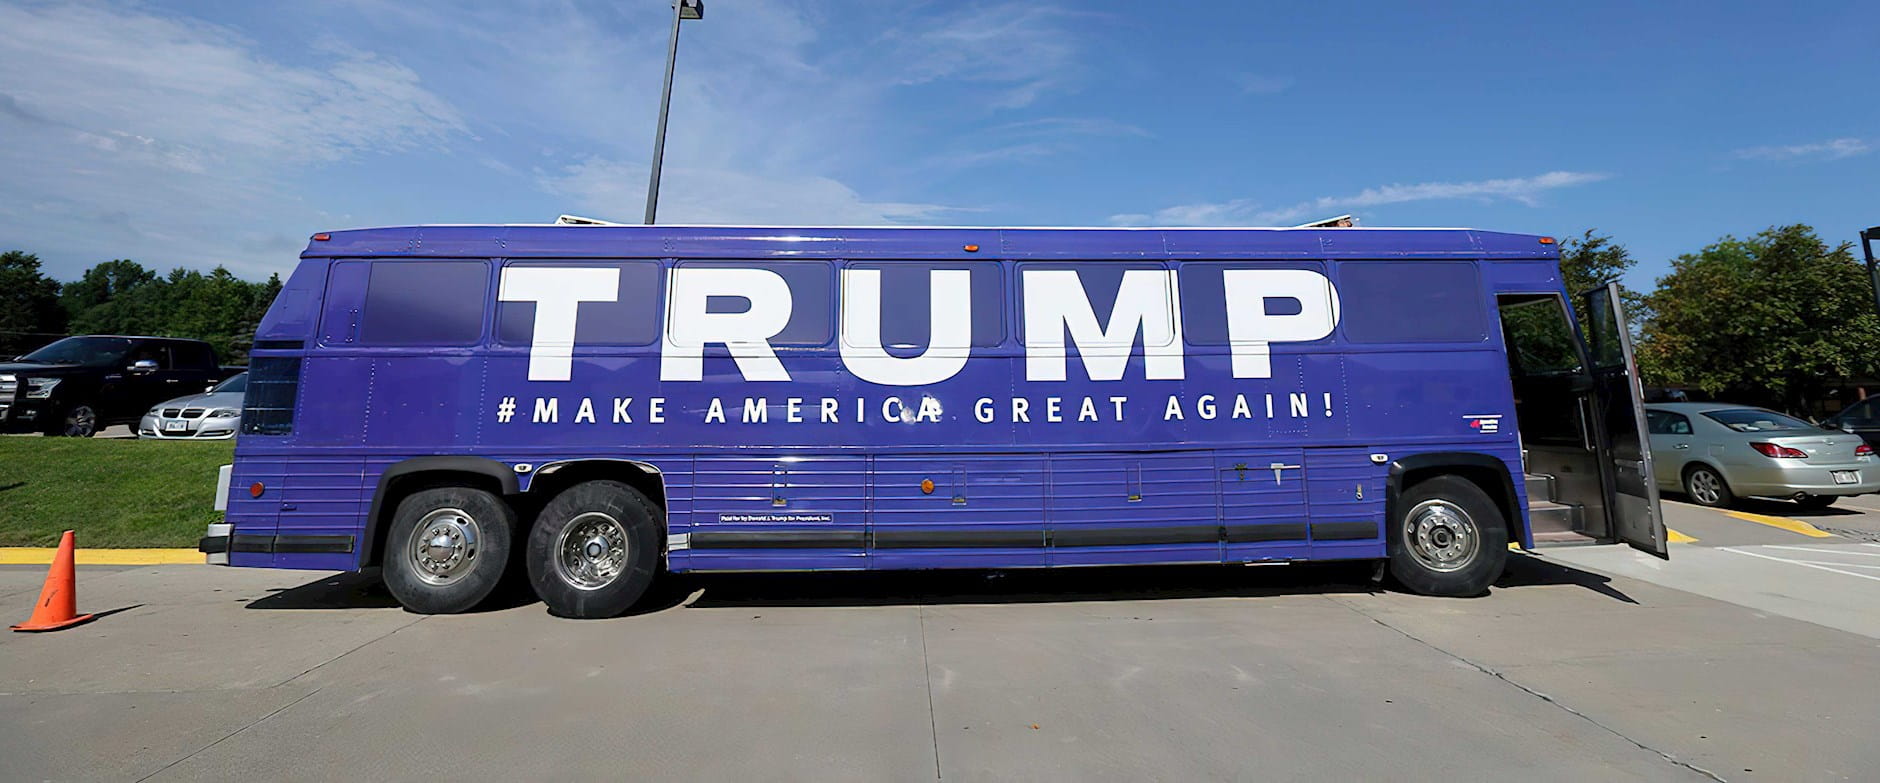 Donald Trump 2016 campaign tour bus